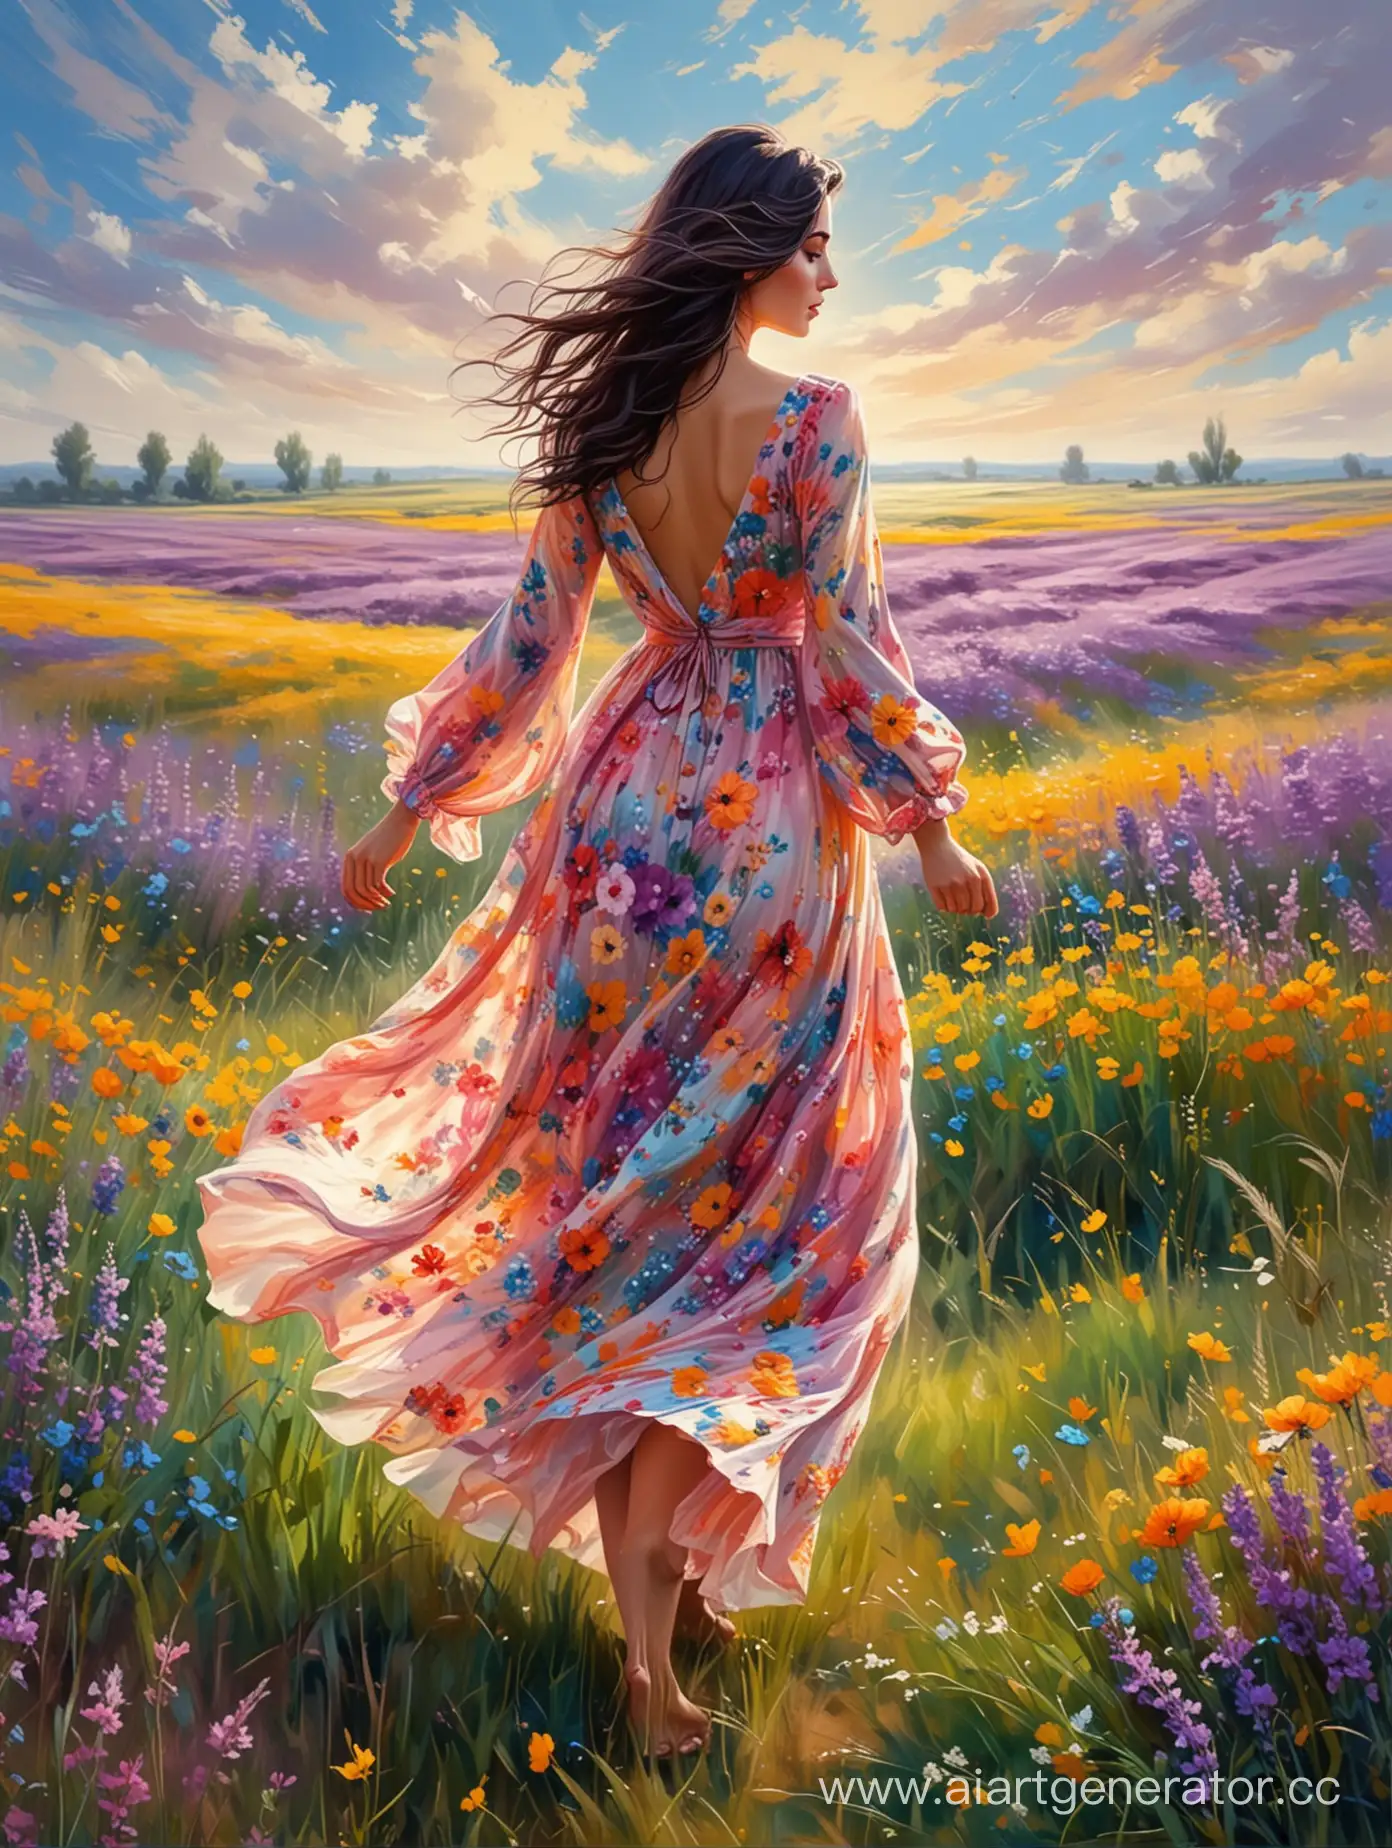 Красивая девушка с тёмными волосами в красивом платье стоит спиной посреди цветущего поля , дует ветер, платье развивается на ветру. В стилистике картины, яркие краски